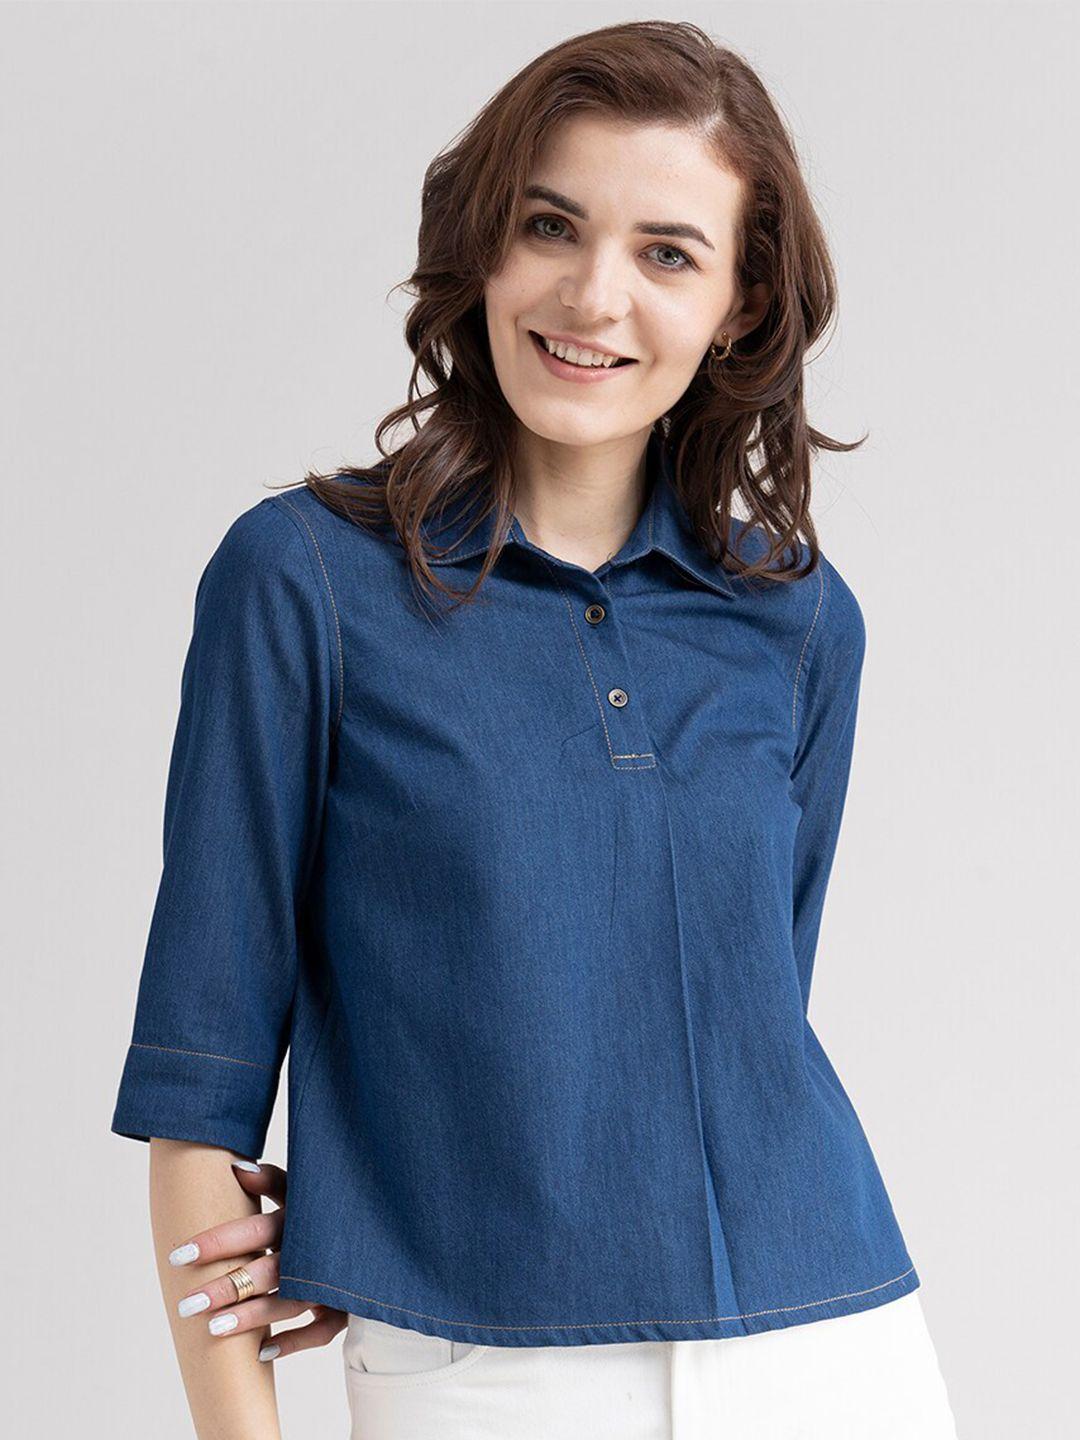 fablestreet women blue denim shirt style top